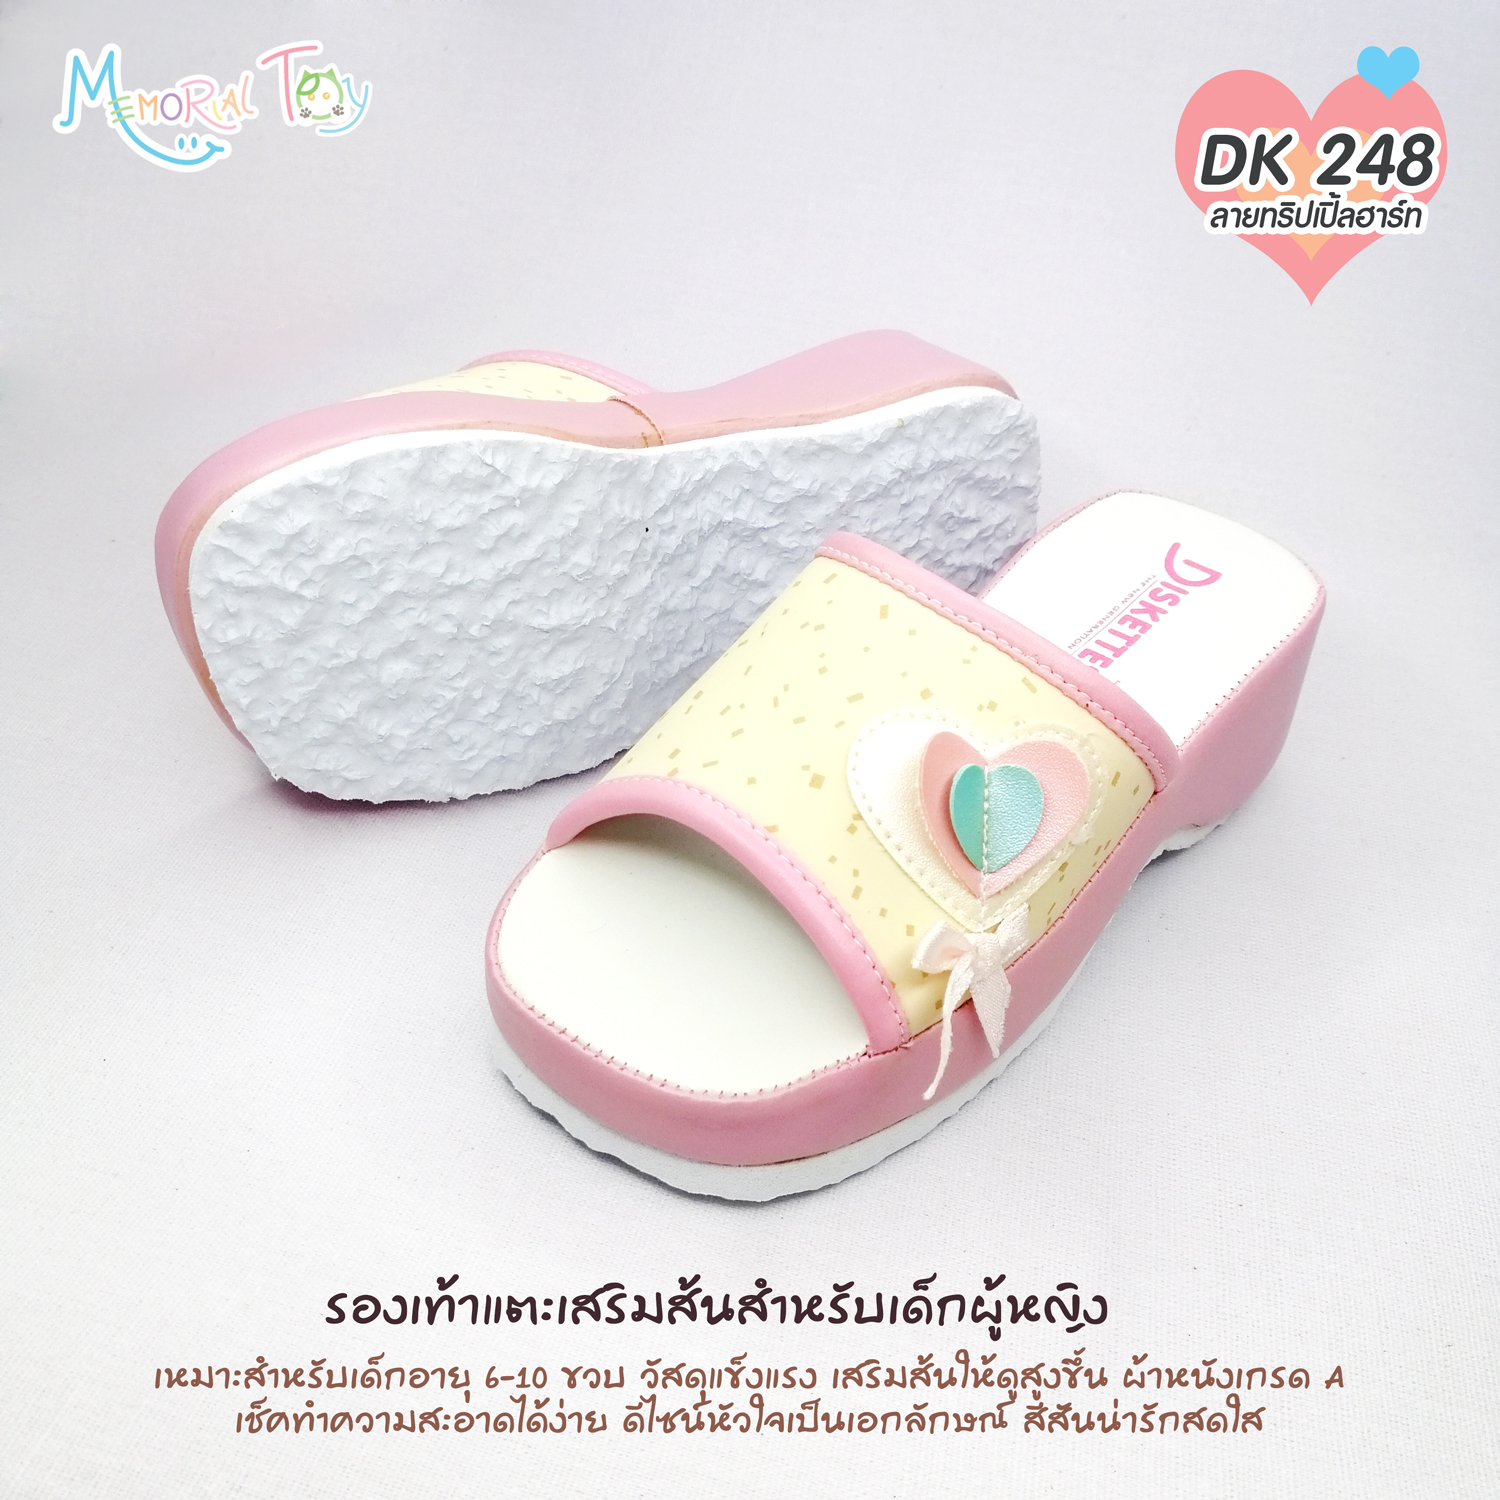 DK 248 รองเท้าแตะ เด็กผู้หญิง  ลายหัวใจซ้อน สีครีม สีชมพู น่ารักมาก สำหรับเด็ก 3-6 ขวบ